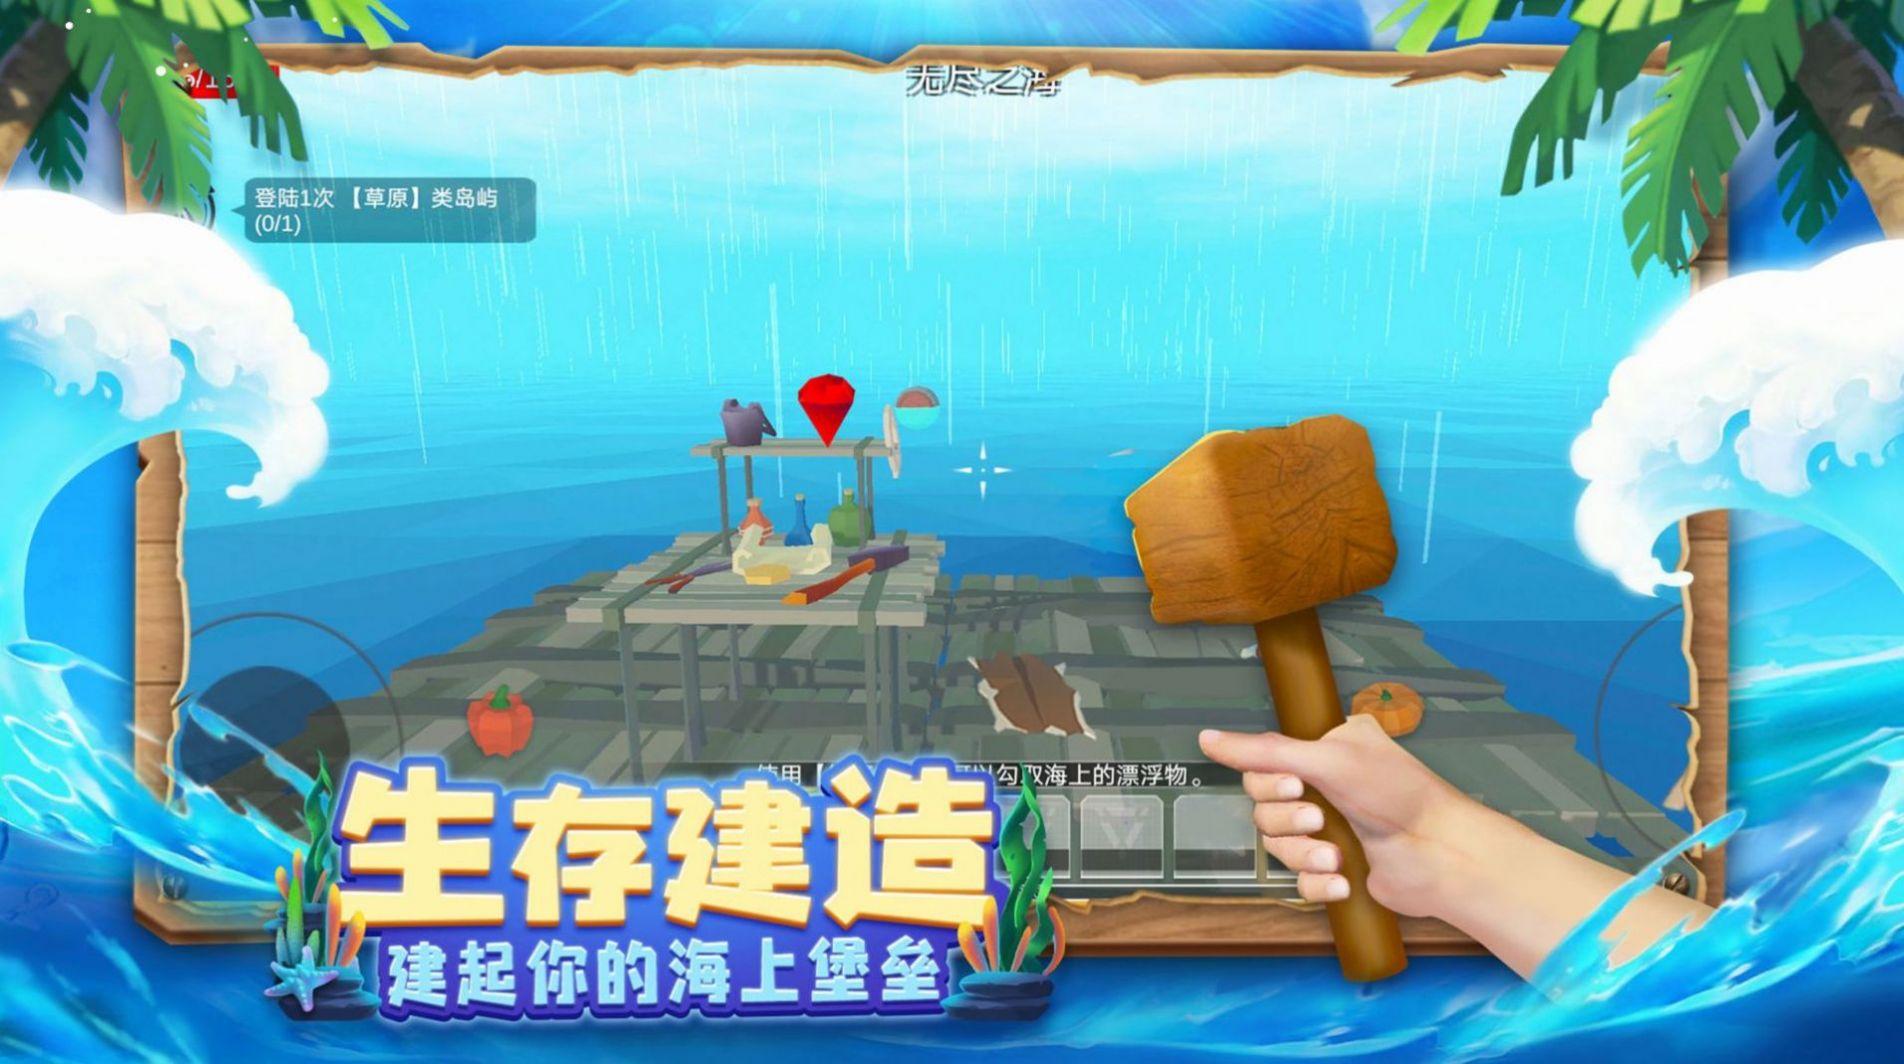 木筏历险记游戏官方手机版截图7: